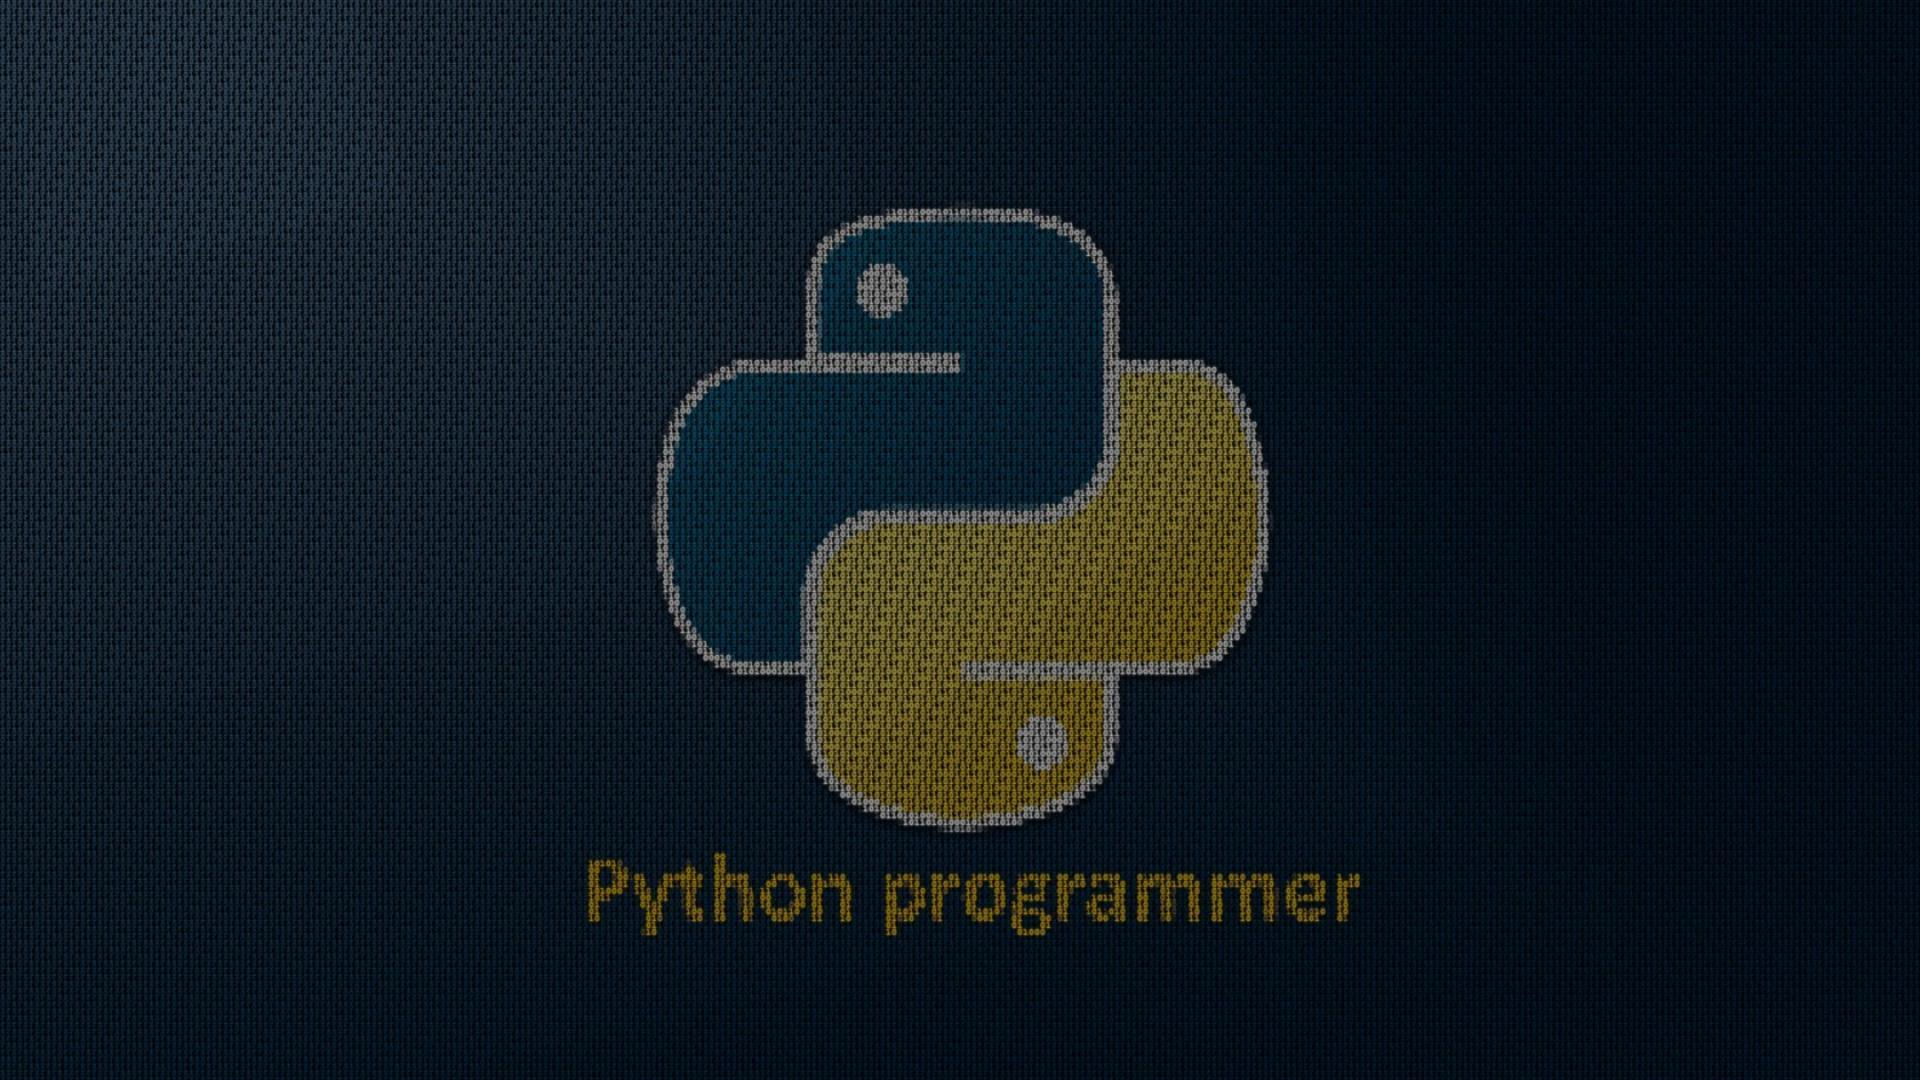 imagemagic python only creates black background windows